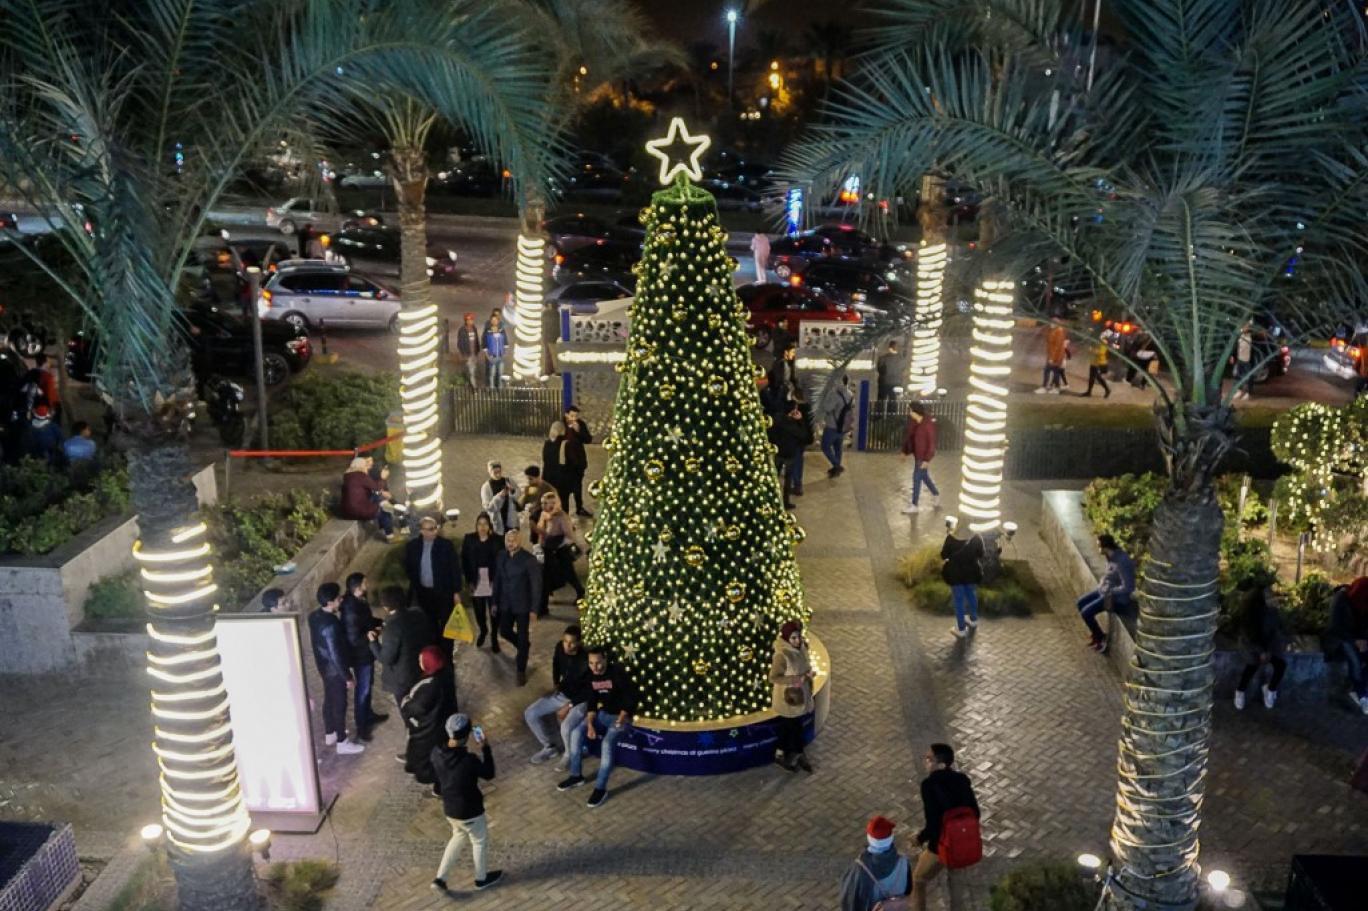 شجرة الكريسماس في مصر اختلافاتها تنشر البهجة وجدال لا يفسد